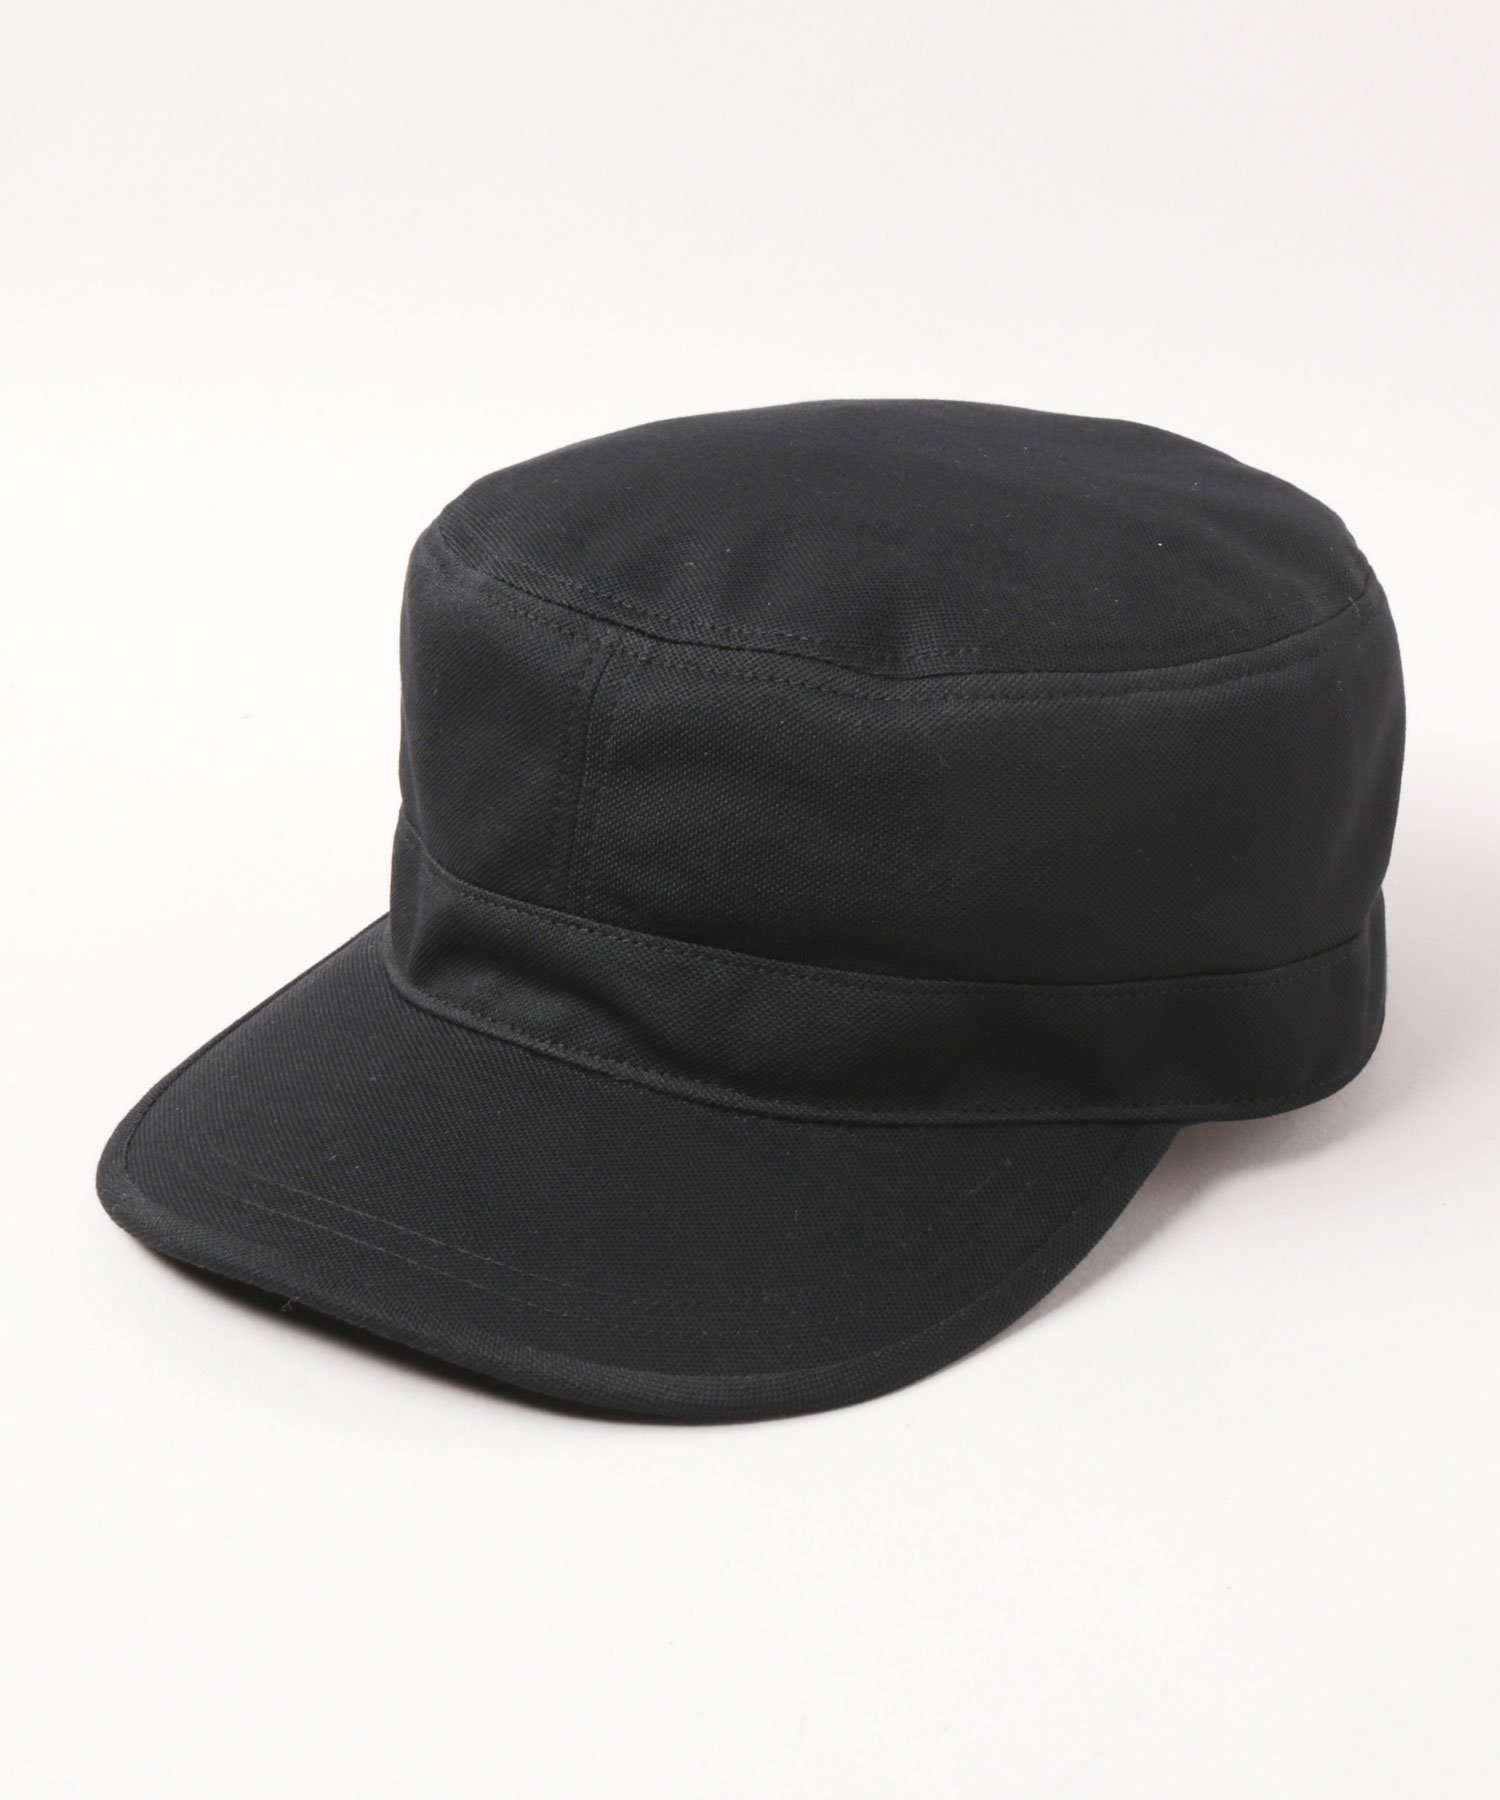 カシラ 帽子 メンズ CA4LA WASHABLE BASIC WORKER SS10 カシラ 帽子 キャップ ブラック ブラウン ネイビー【送料無料】